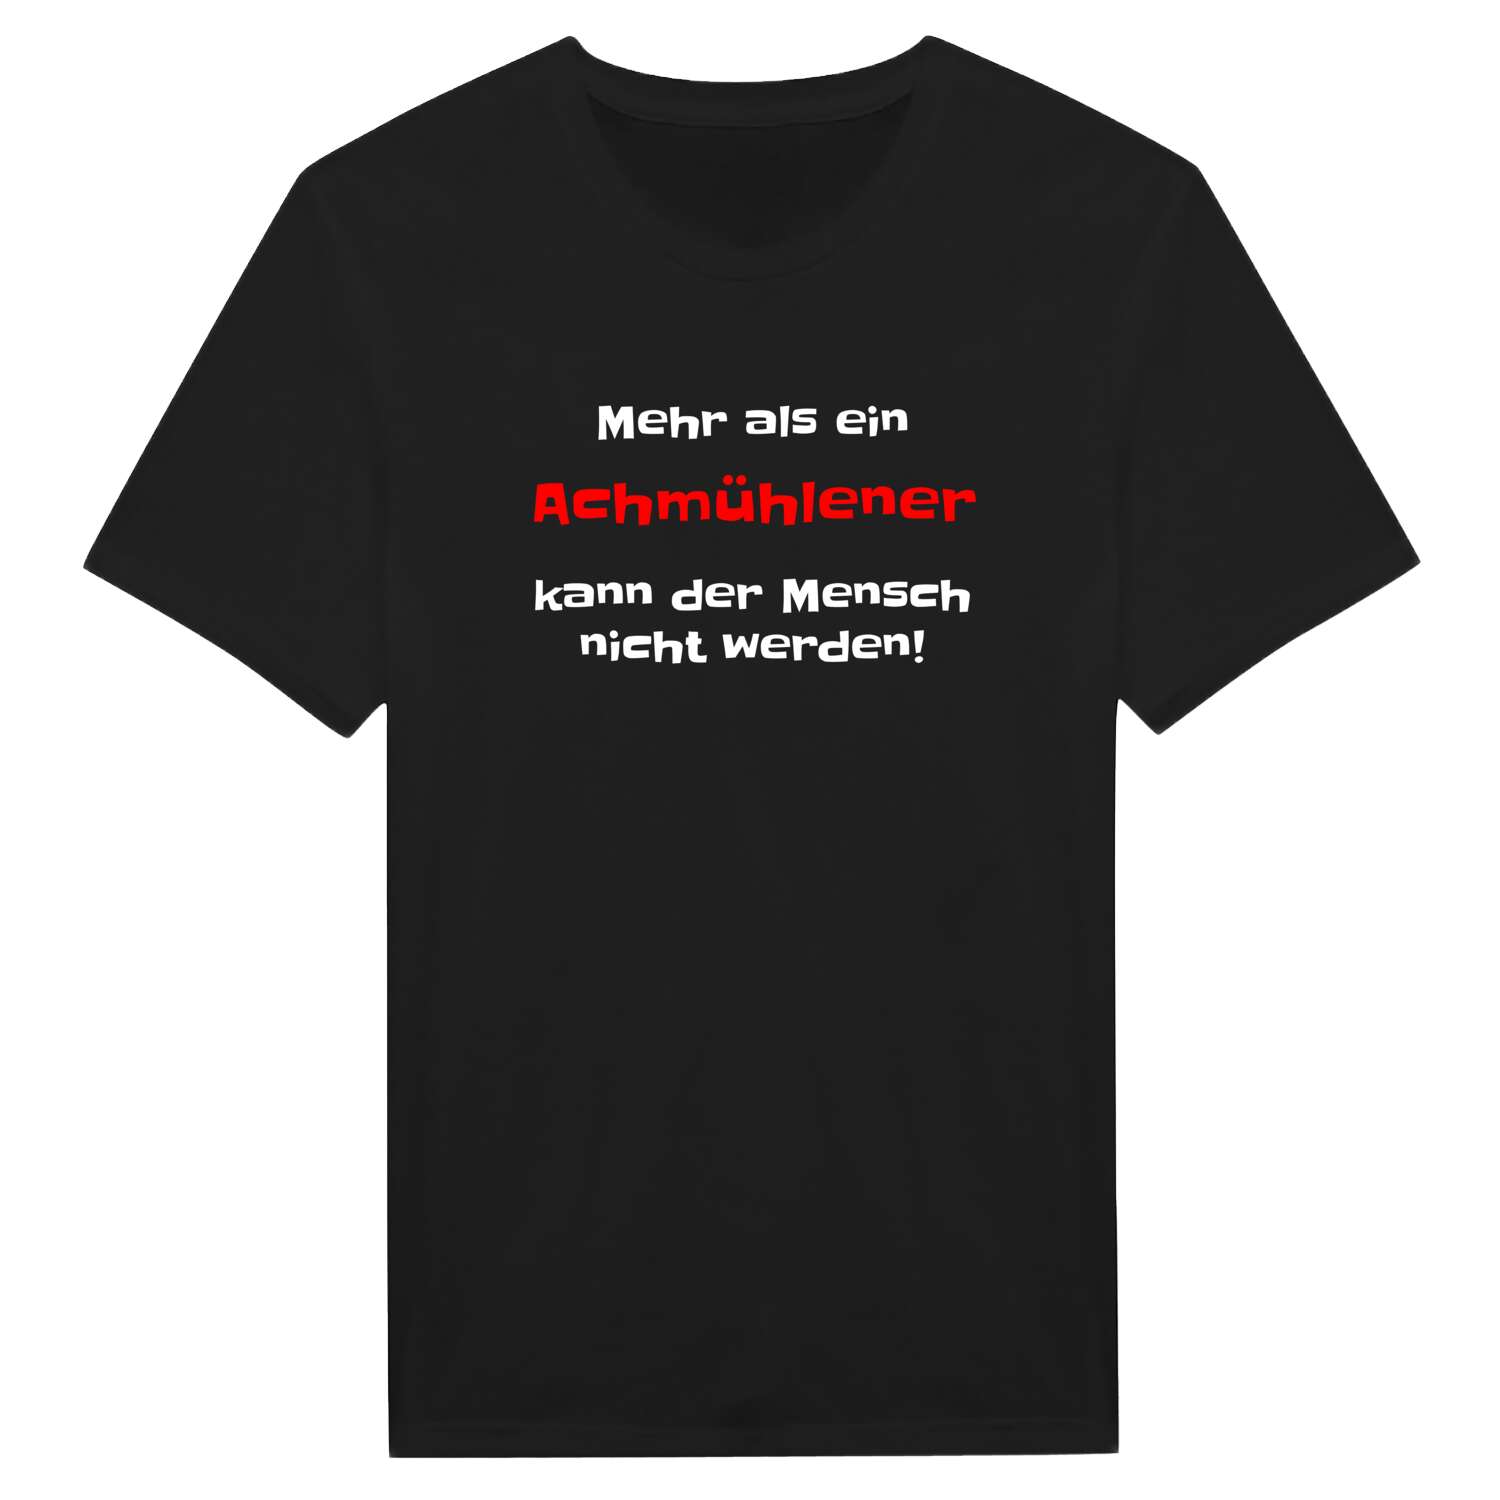 Achmühle T-Shirt »Mehr als ein«